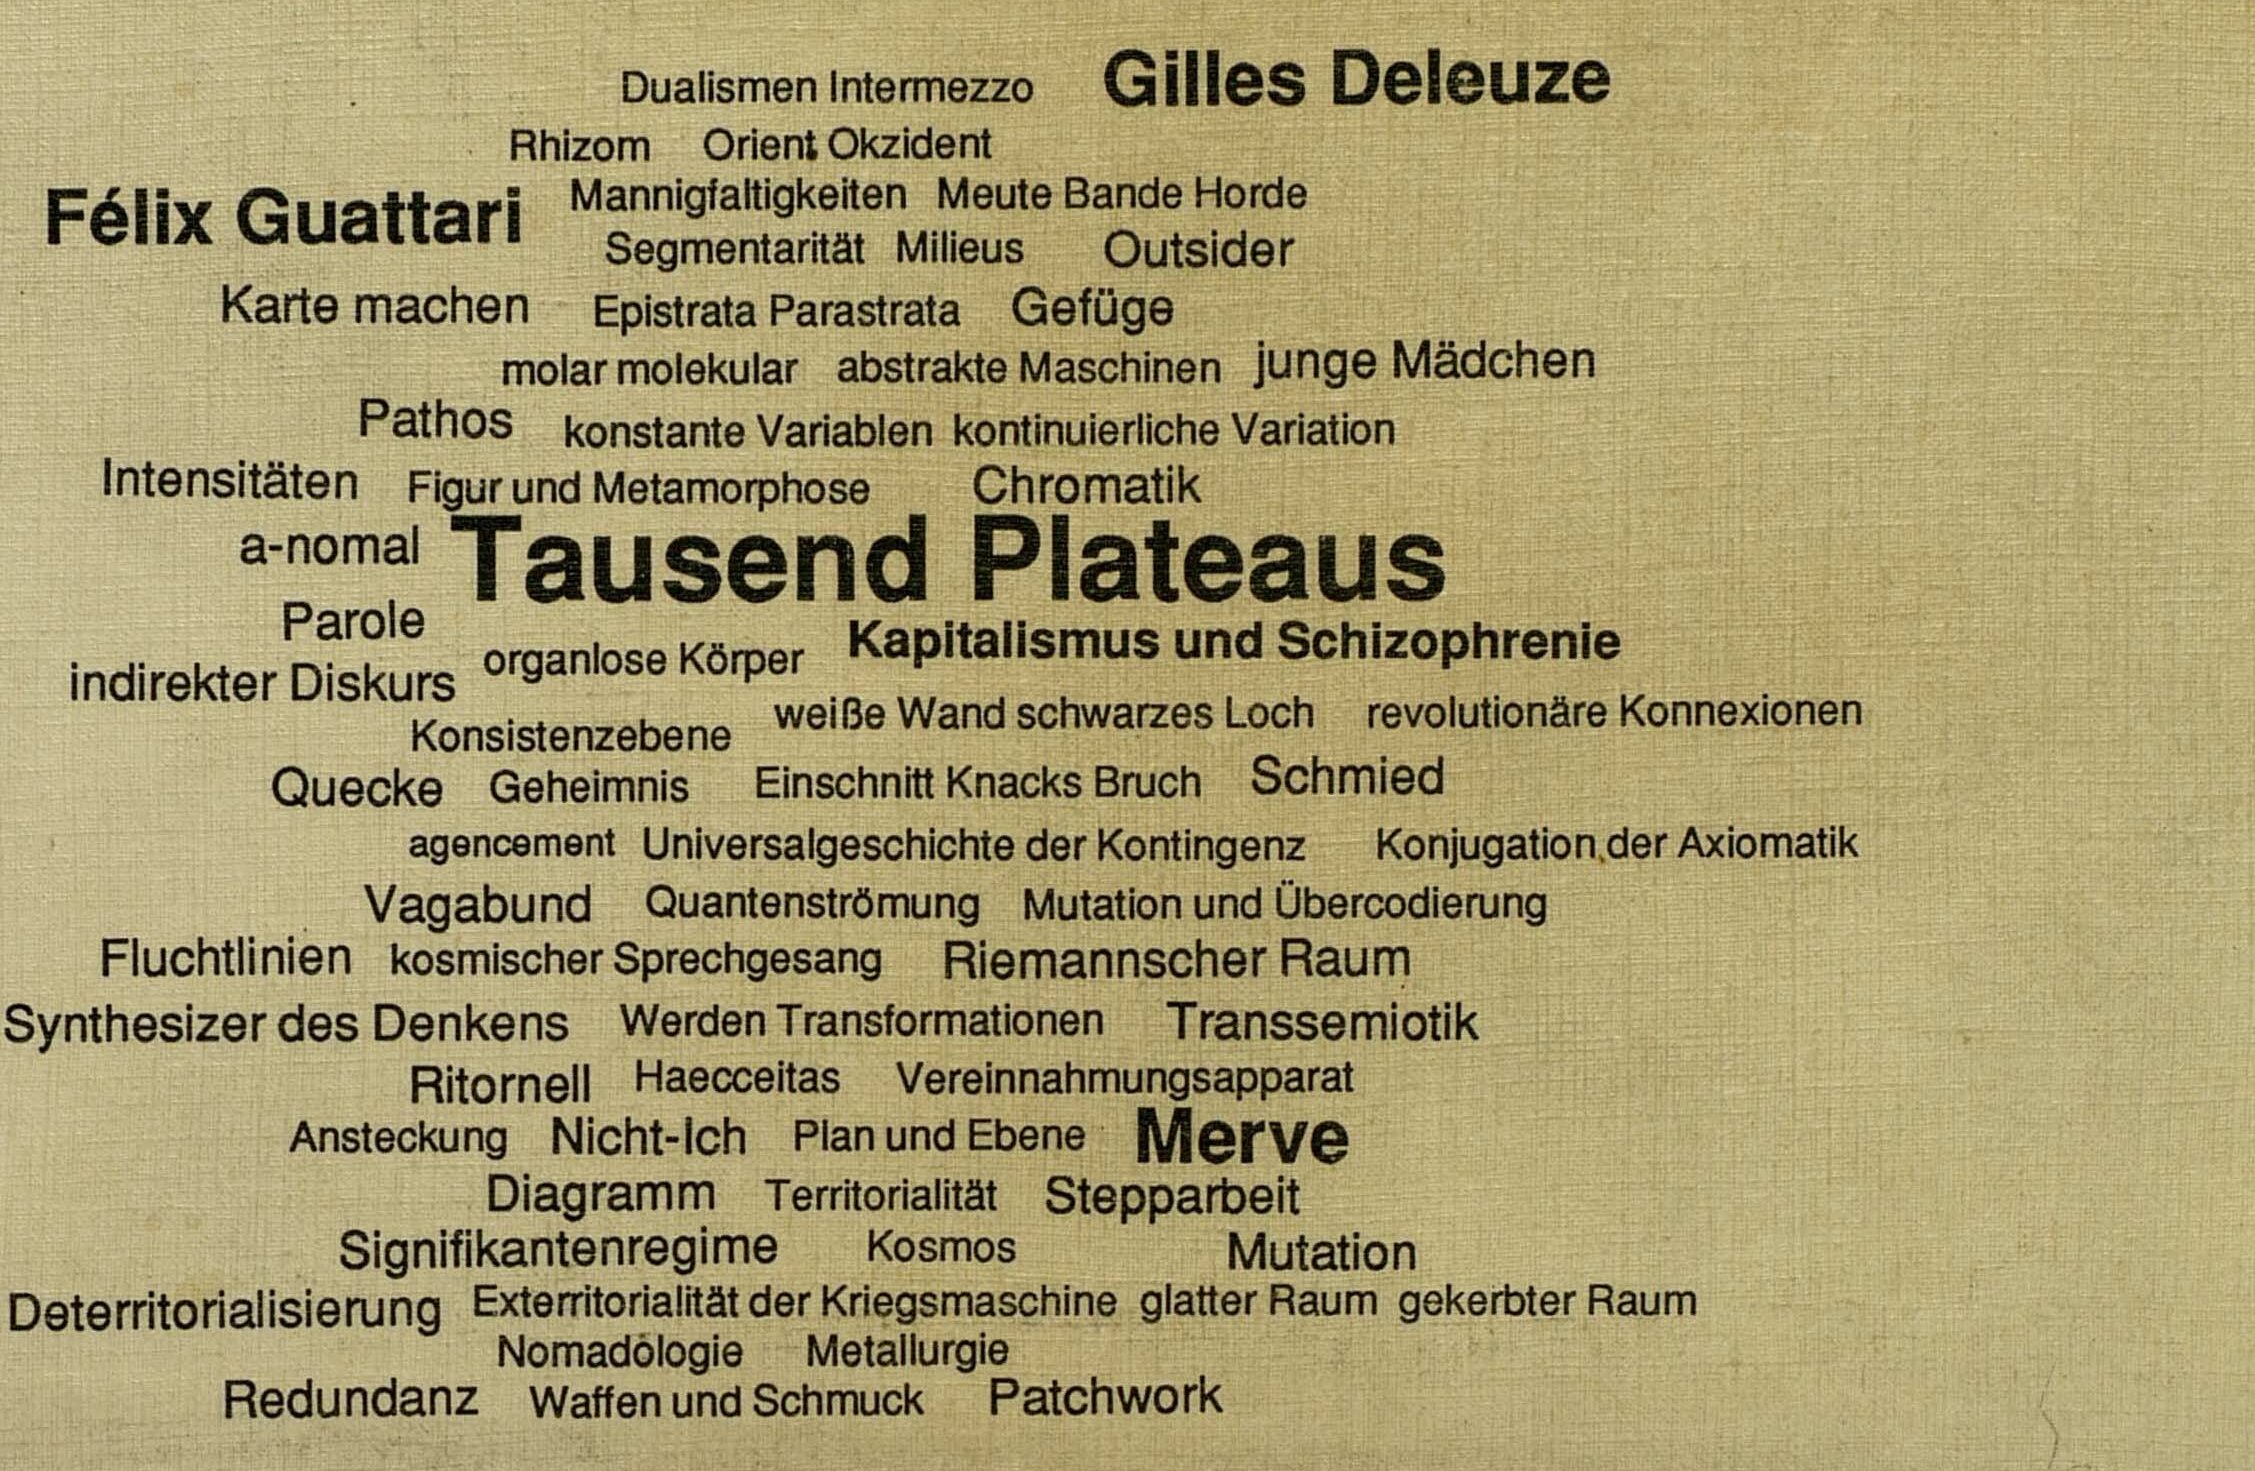 Tausend Plateaus von Gilles Deleuze und Félix Guattari